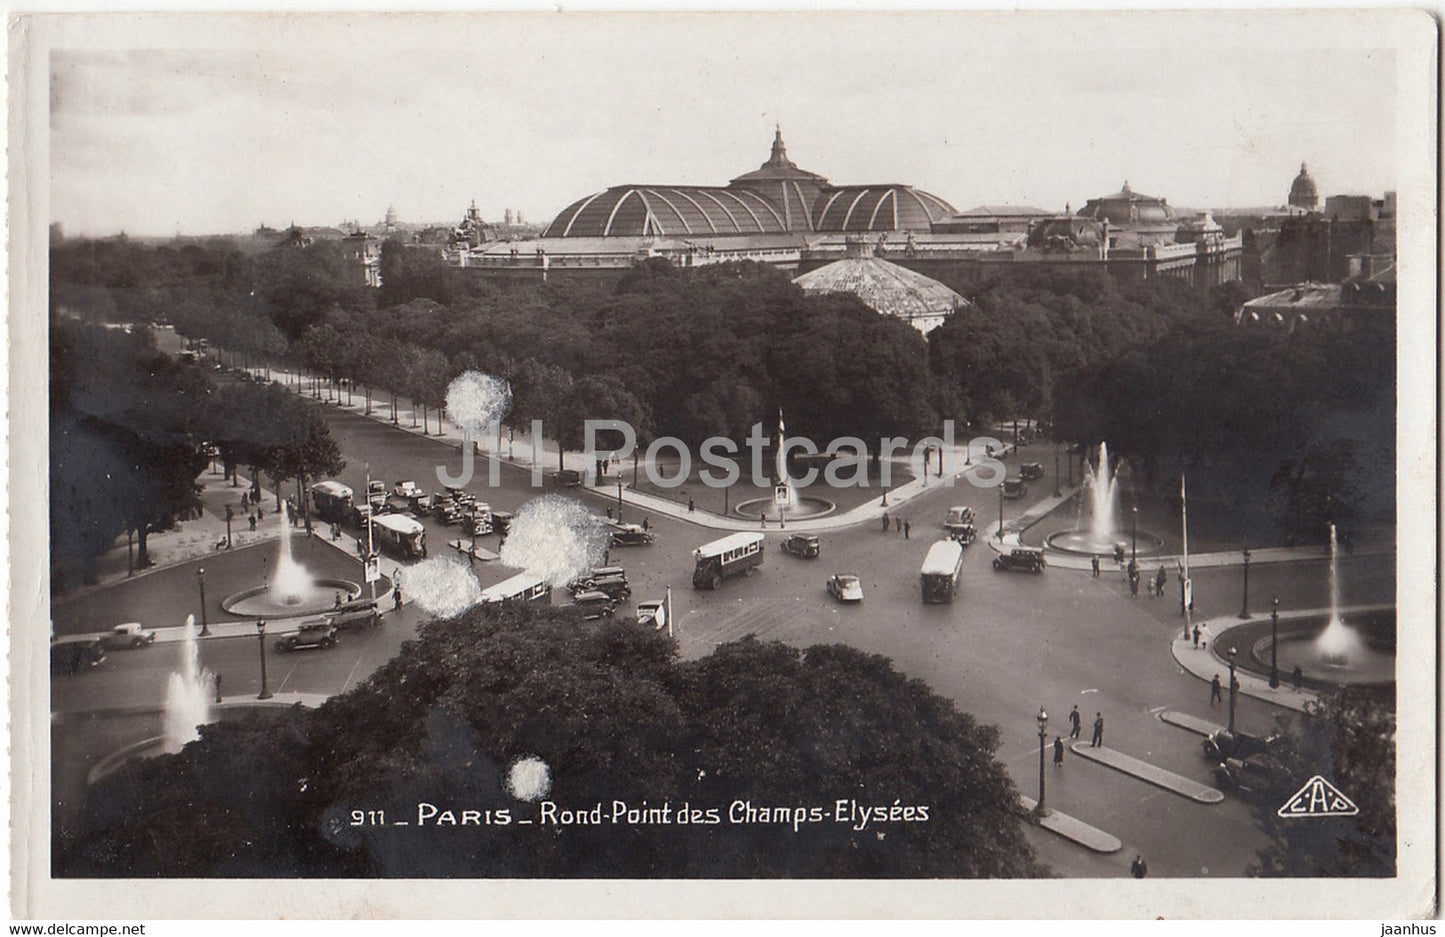 Paris - Rond Point des Champs Elysees - car - bus - 911 - old postcard - France - unused - JH Postcards